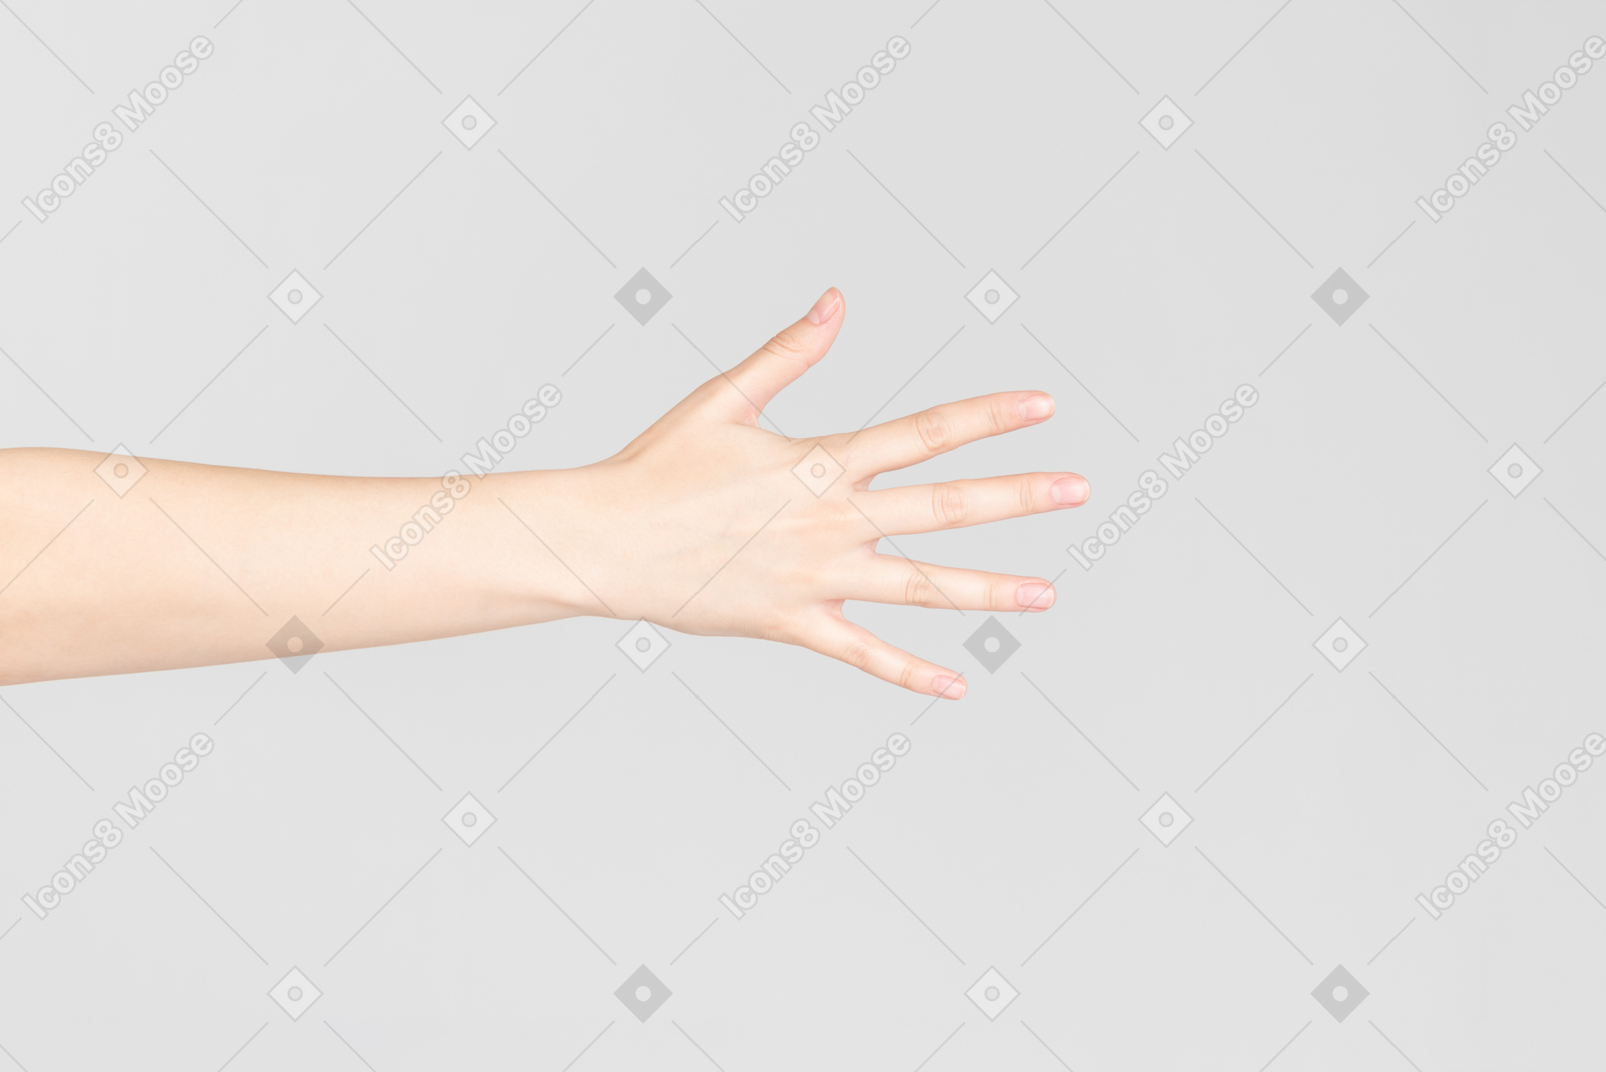 열린 손가락으로 여자의 손의 측면 모습